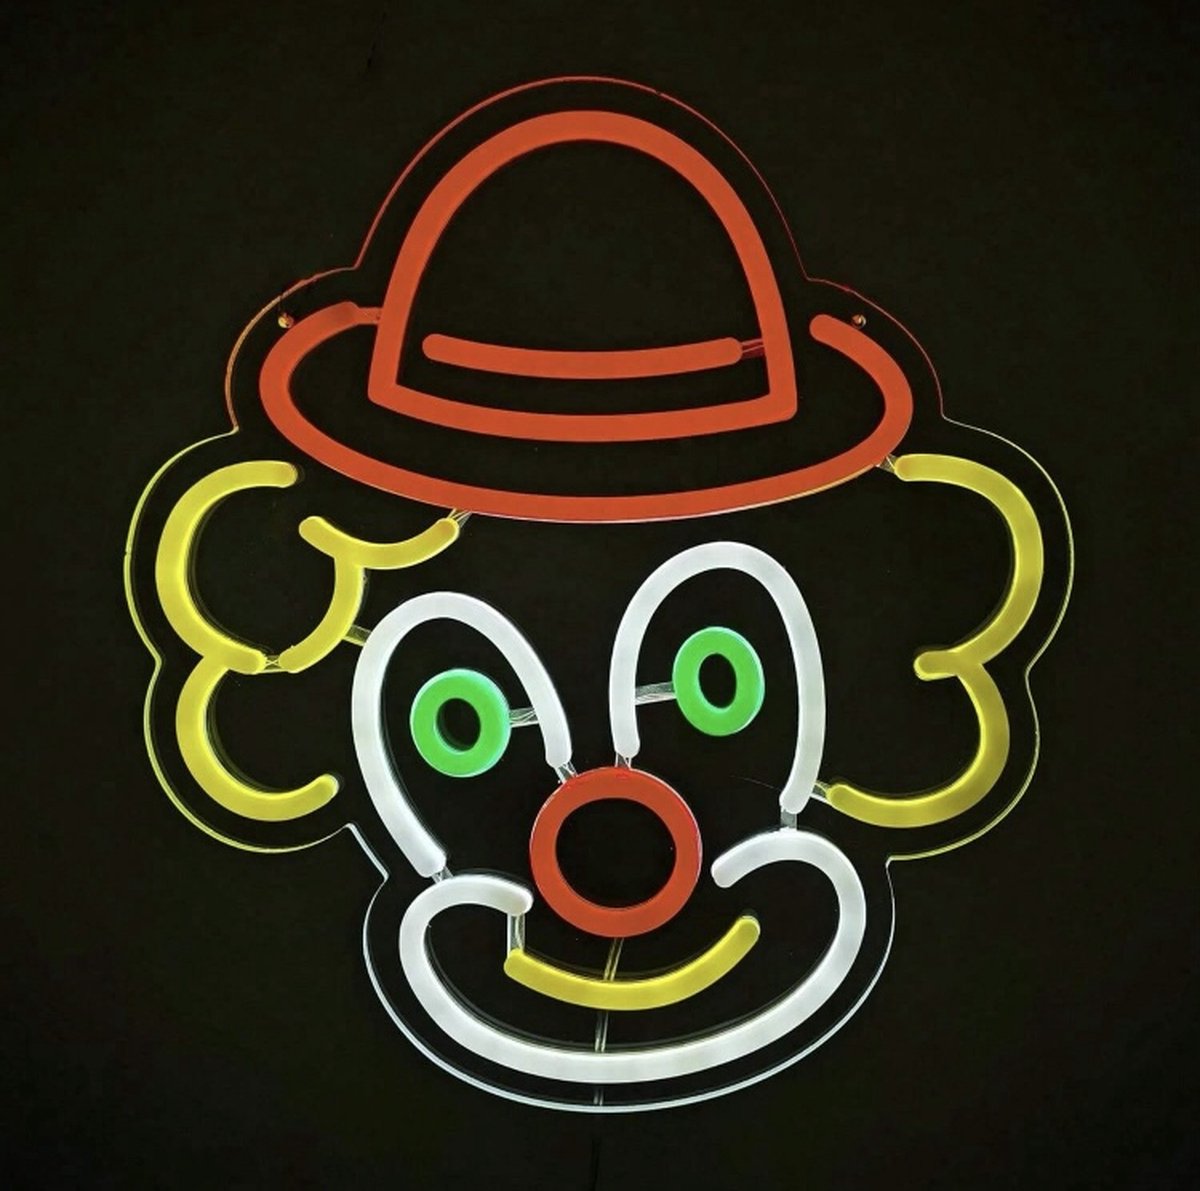 Neon verlichting clown - Clown - Professionele verlichting - Neon wandlamp - Horeca - Neon ligt - Sfeerverlichting - Neonlicht - Neon lamp - Neonverlichting - Neon verlichting - Tafellampen - Verlichting - Kindertafellampen - Kinderlamp – Kinderkamer